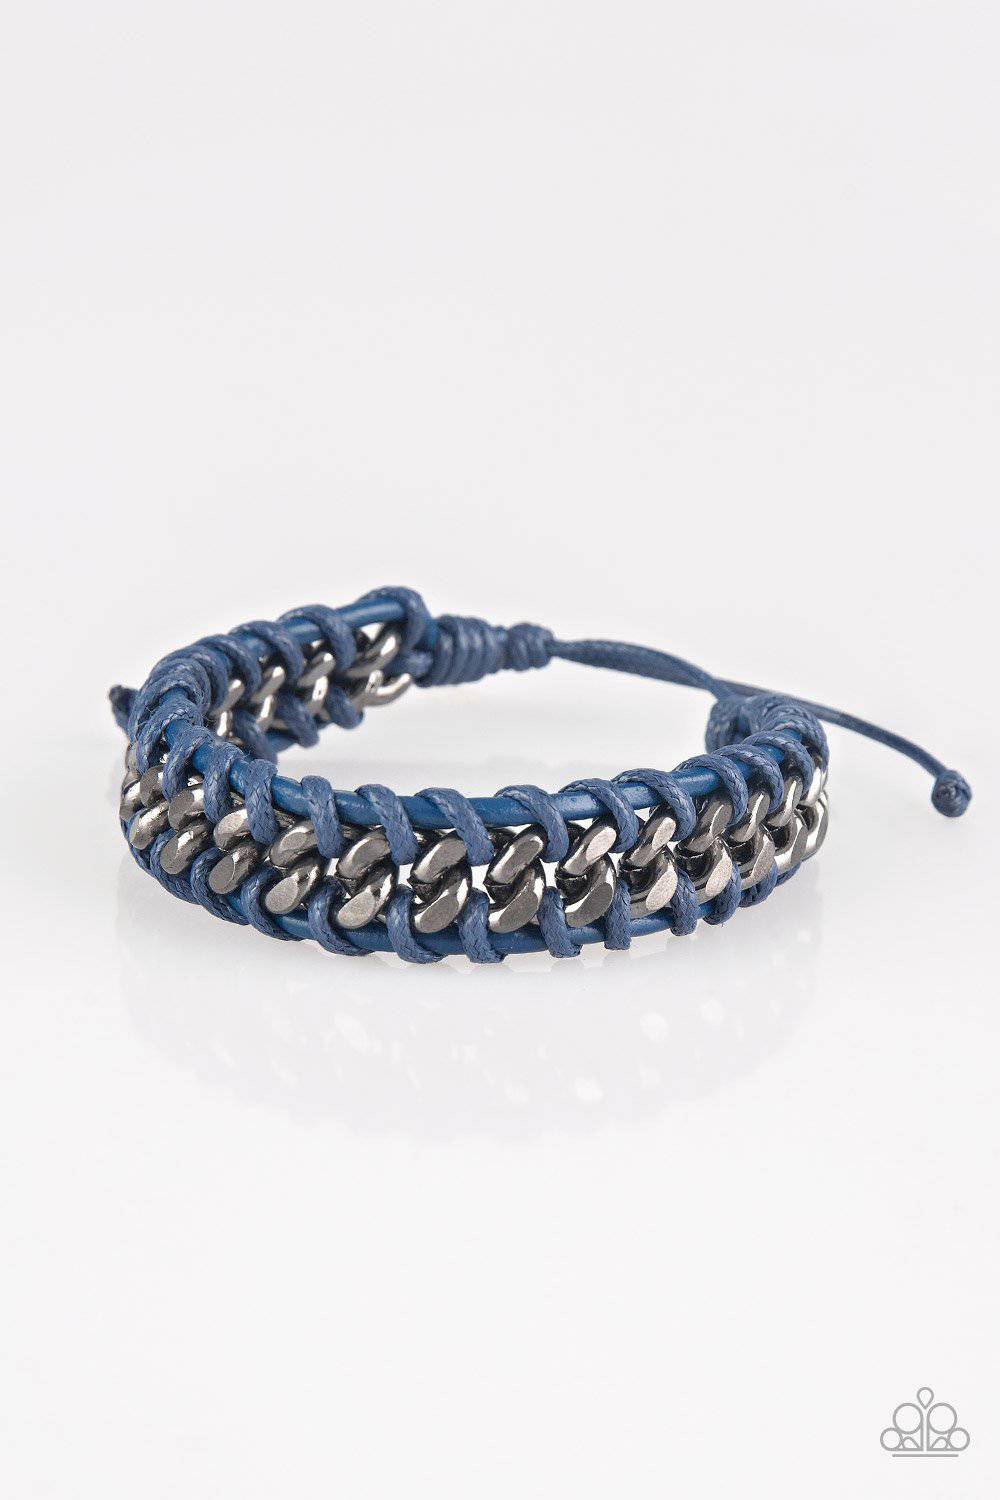 Racer Edge - Men's Blue Cording Knots Bracelet - Paparazzi Accessories - GlaMarous Titi Jewels